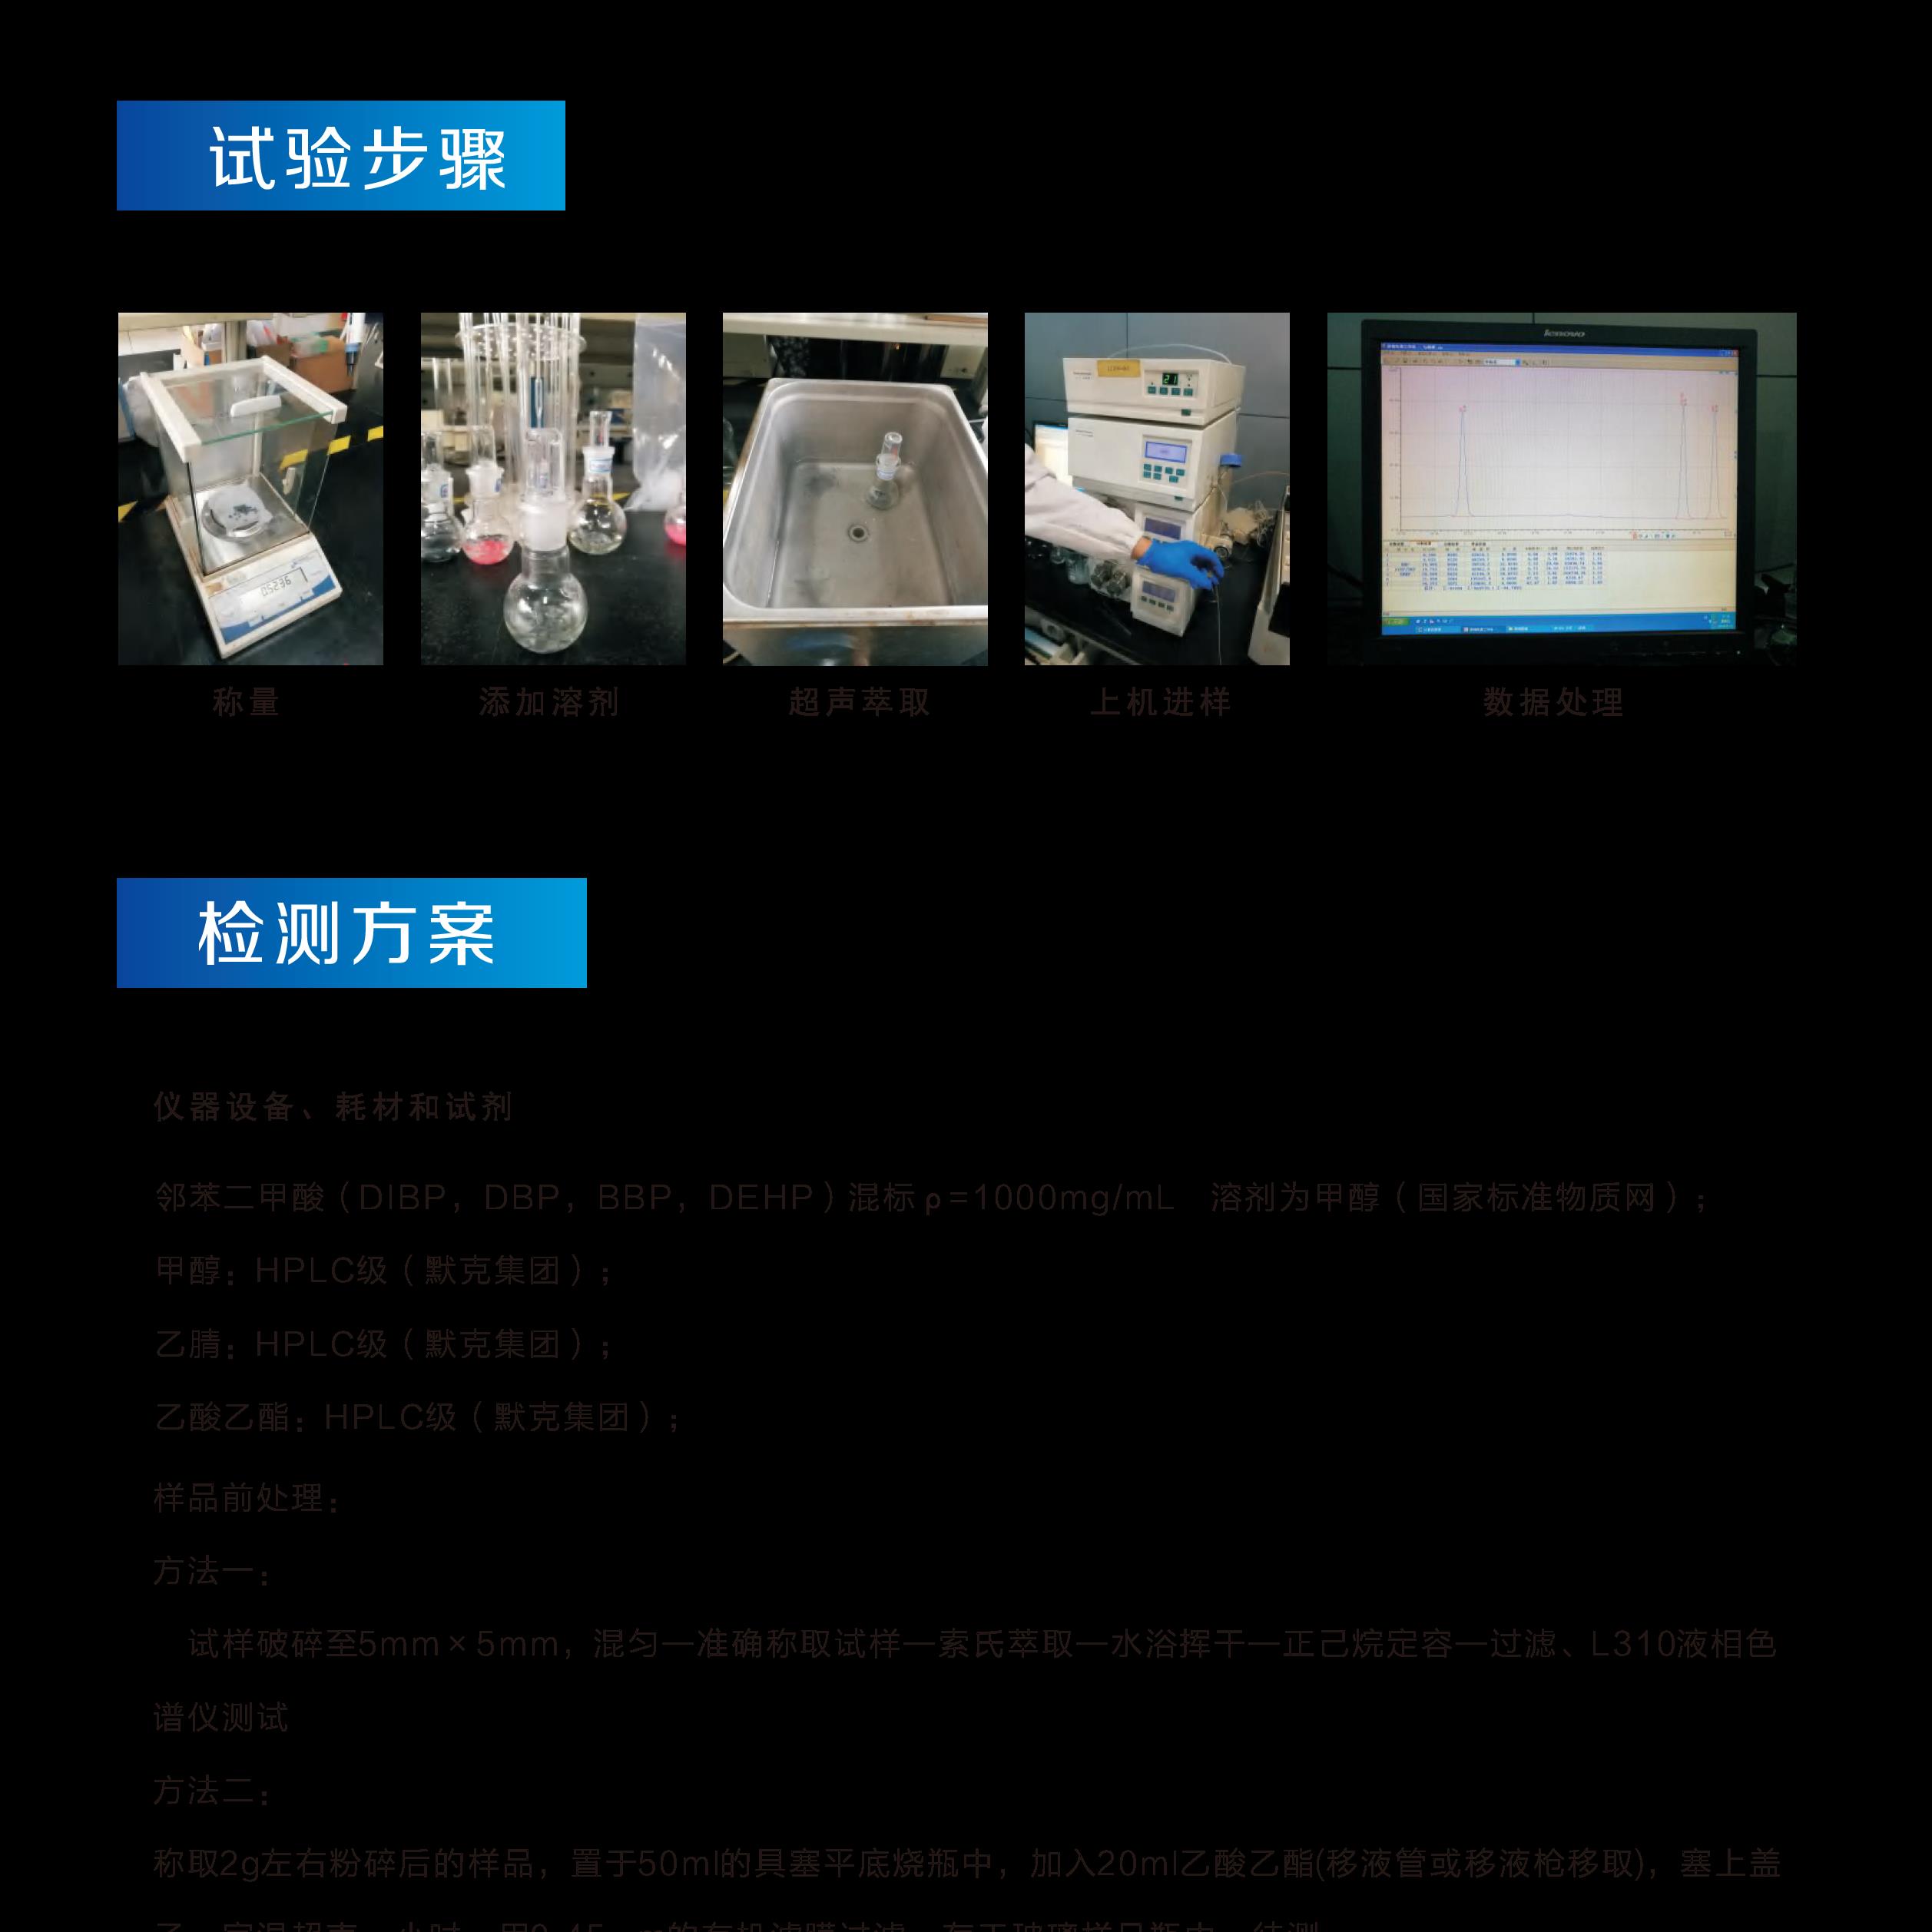 上海rohs2.0检测机构